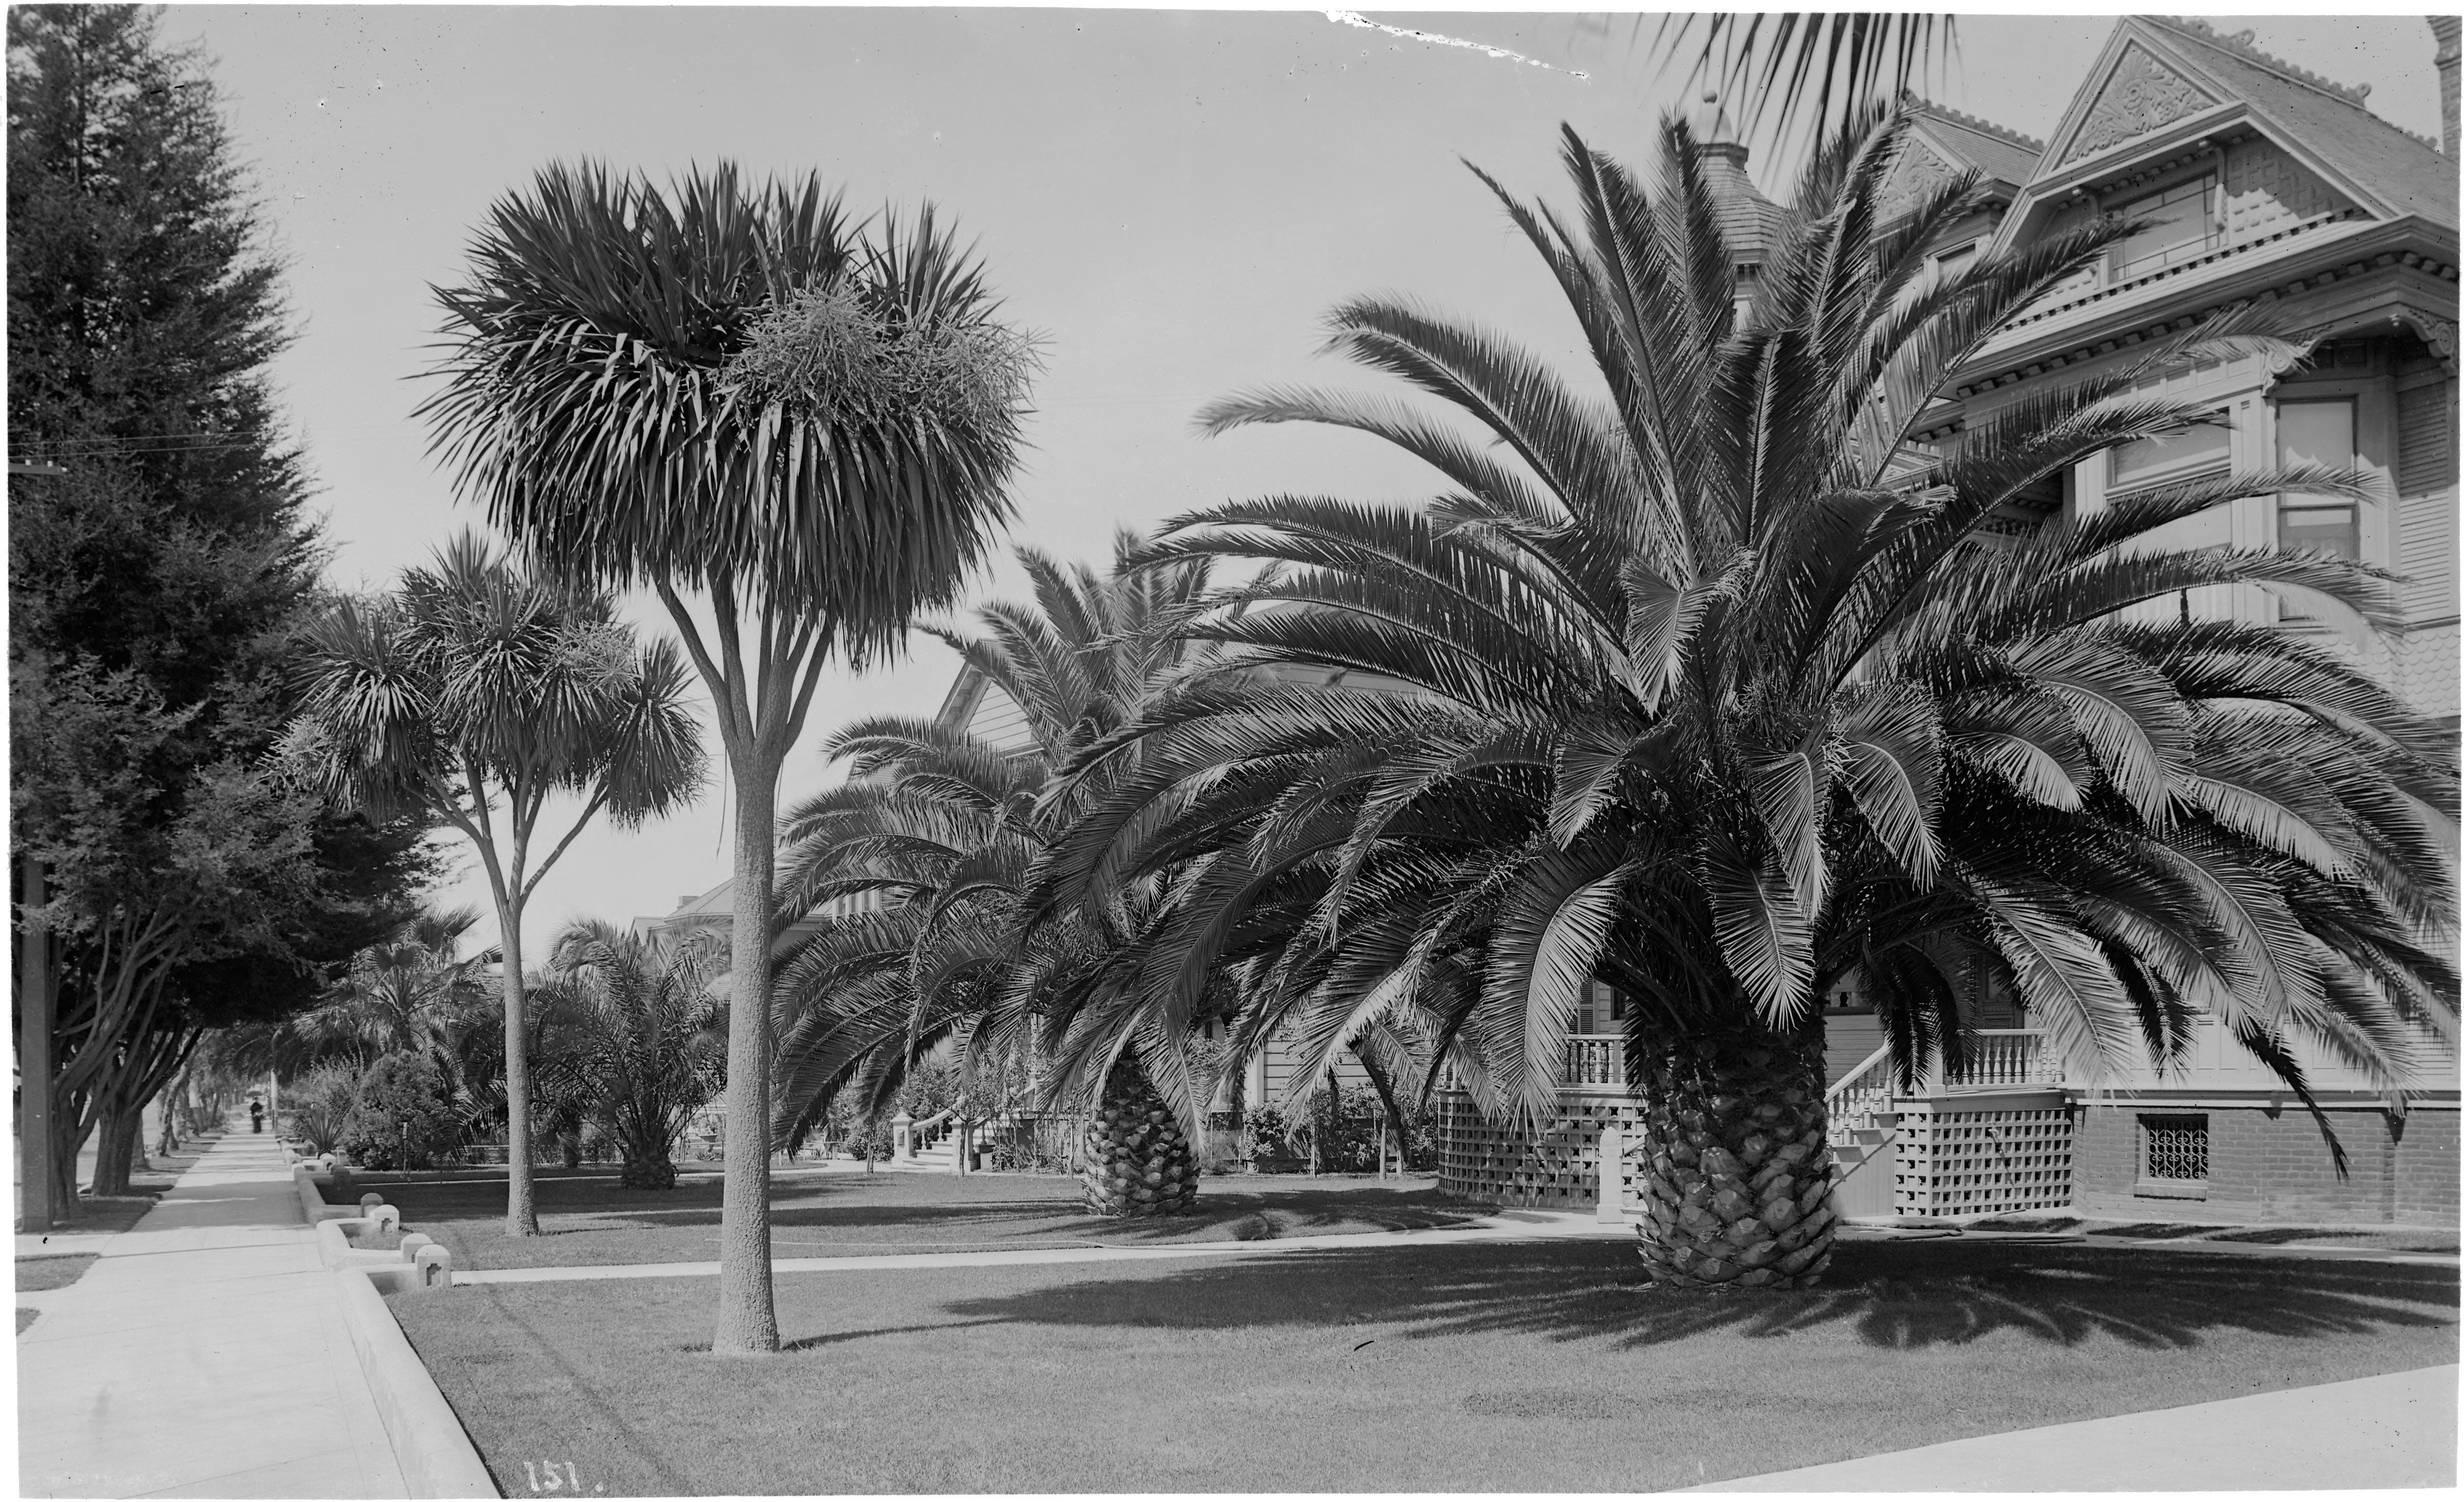 عکس قدیمی و سیاه و سفید از درختان کوکوس در فضای خانه در لس آنجلس